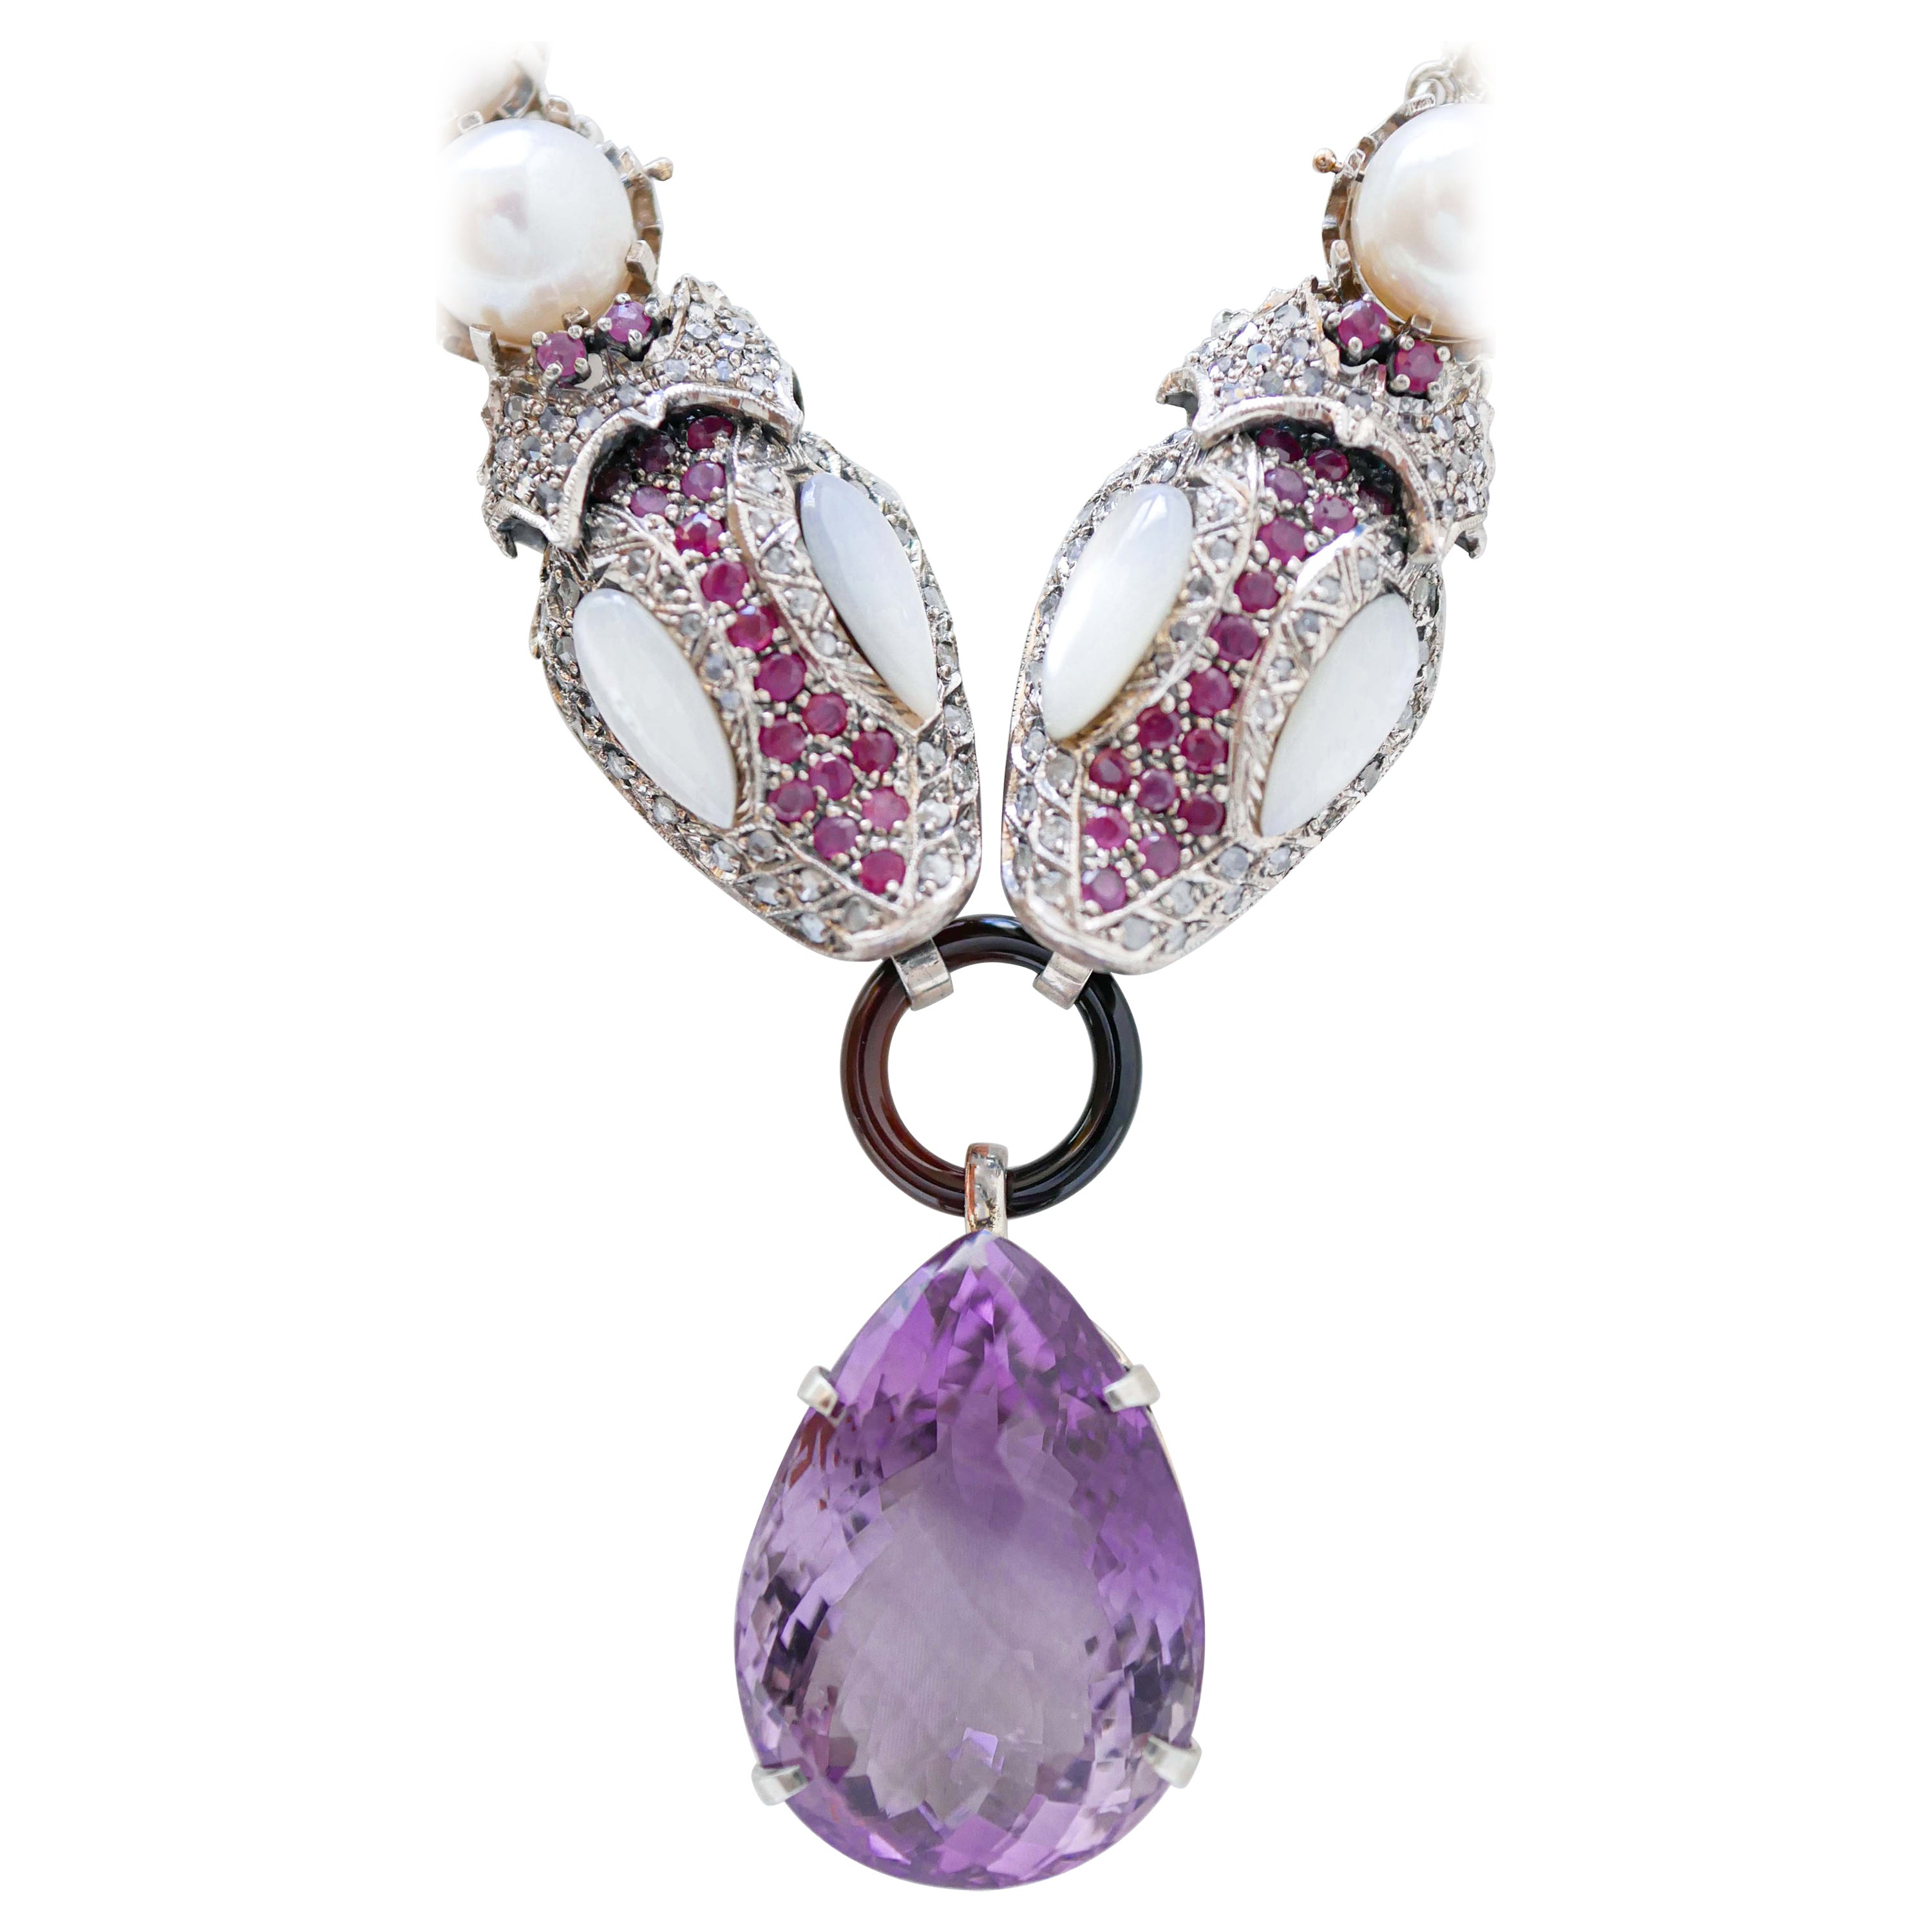 Halskette aus Roségold und Silber mit Amethyst, Rubinen, Perlen, weißen Steinen, Diamanten und Diamanten.